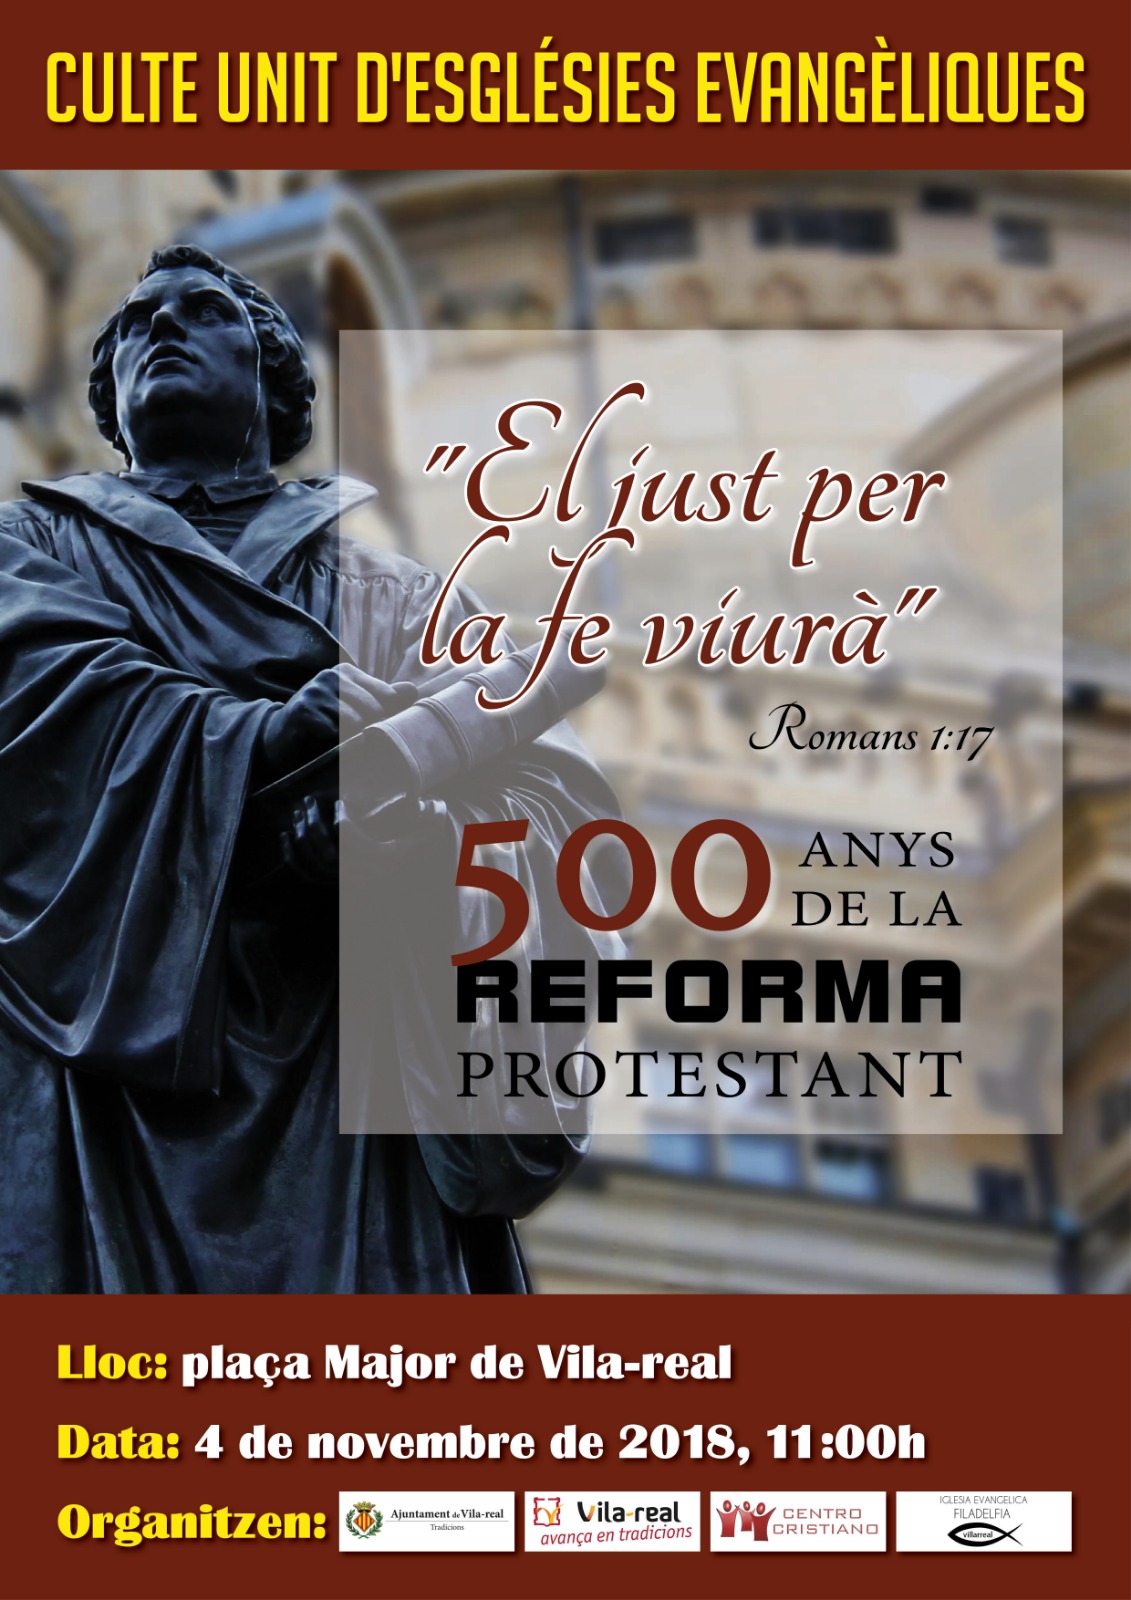 "El just per la fe viurà" - 500 años de la reforma protestante